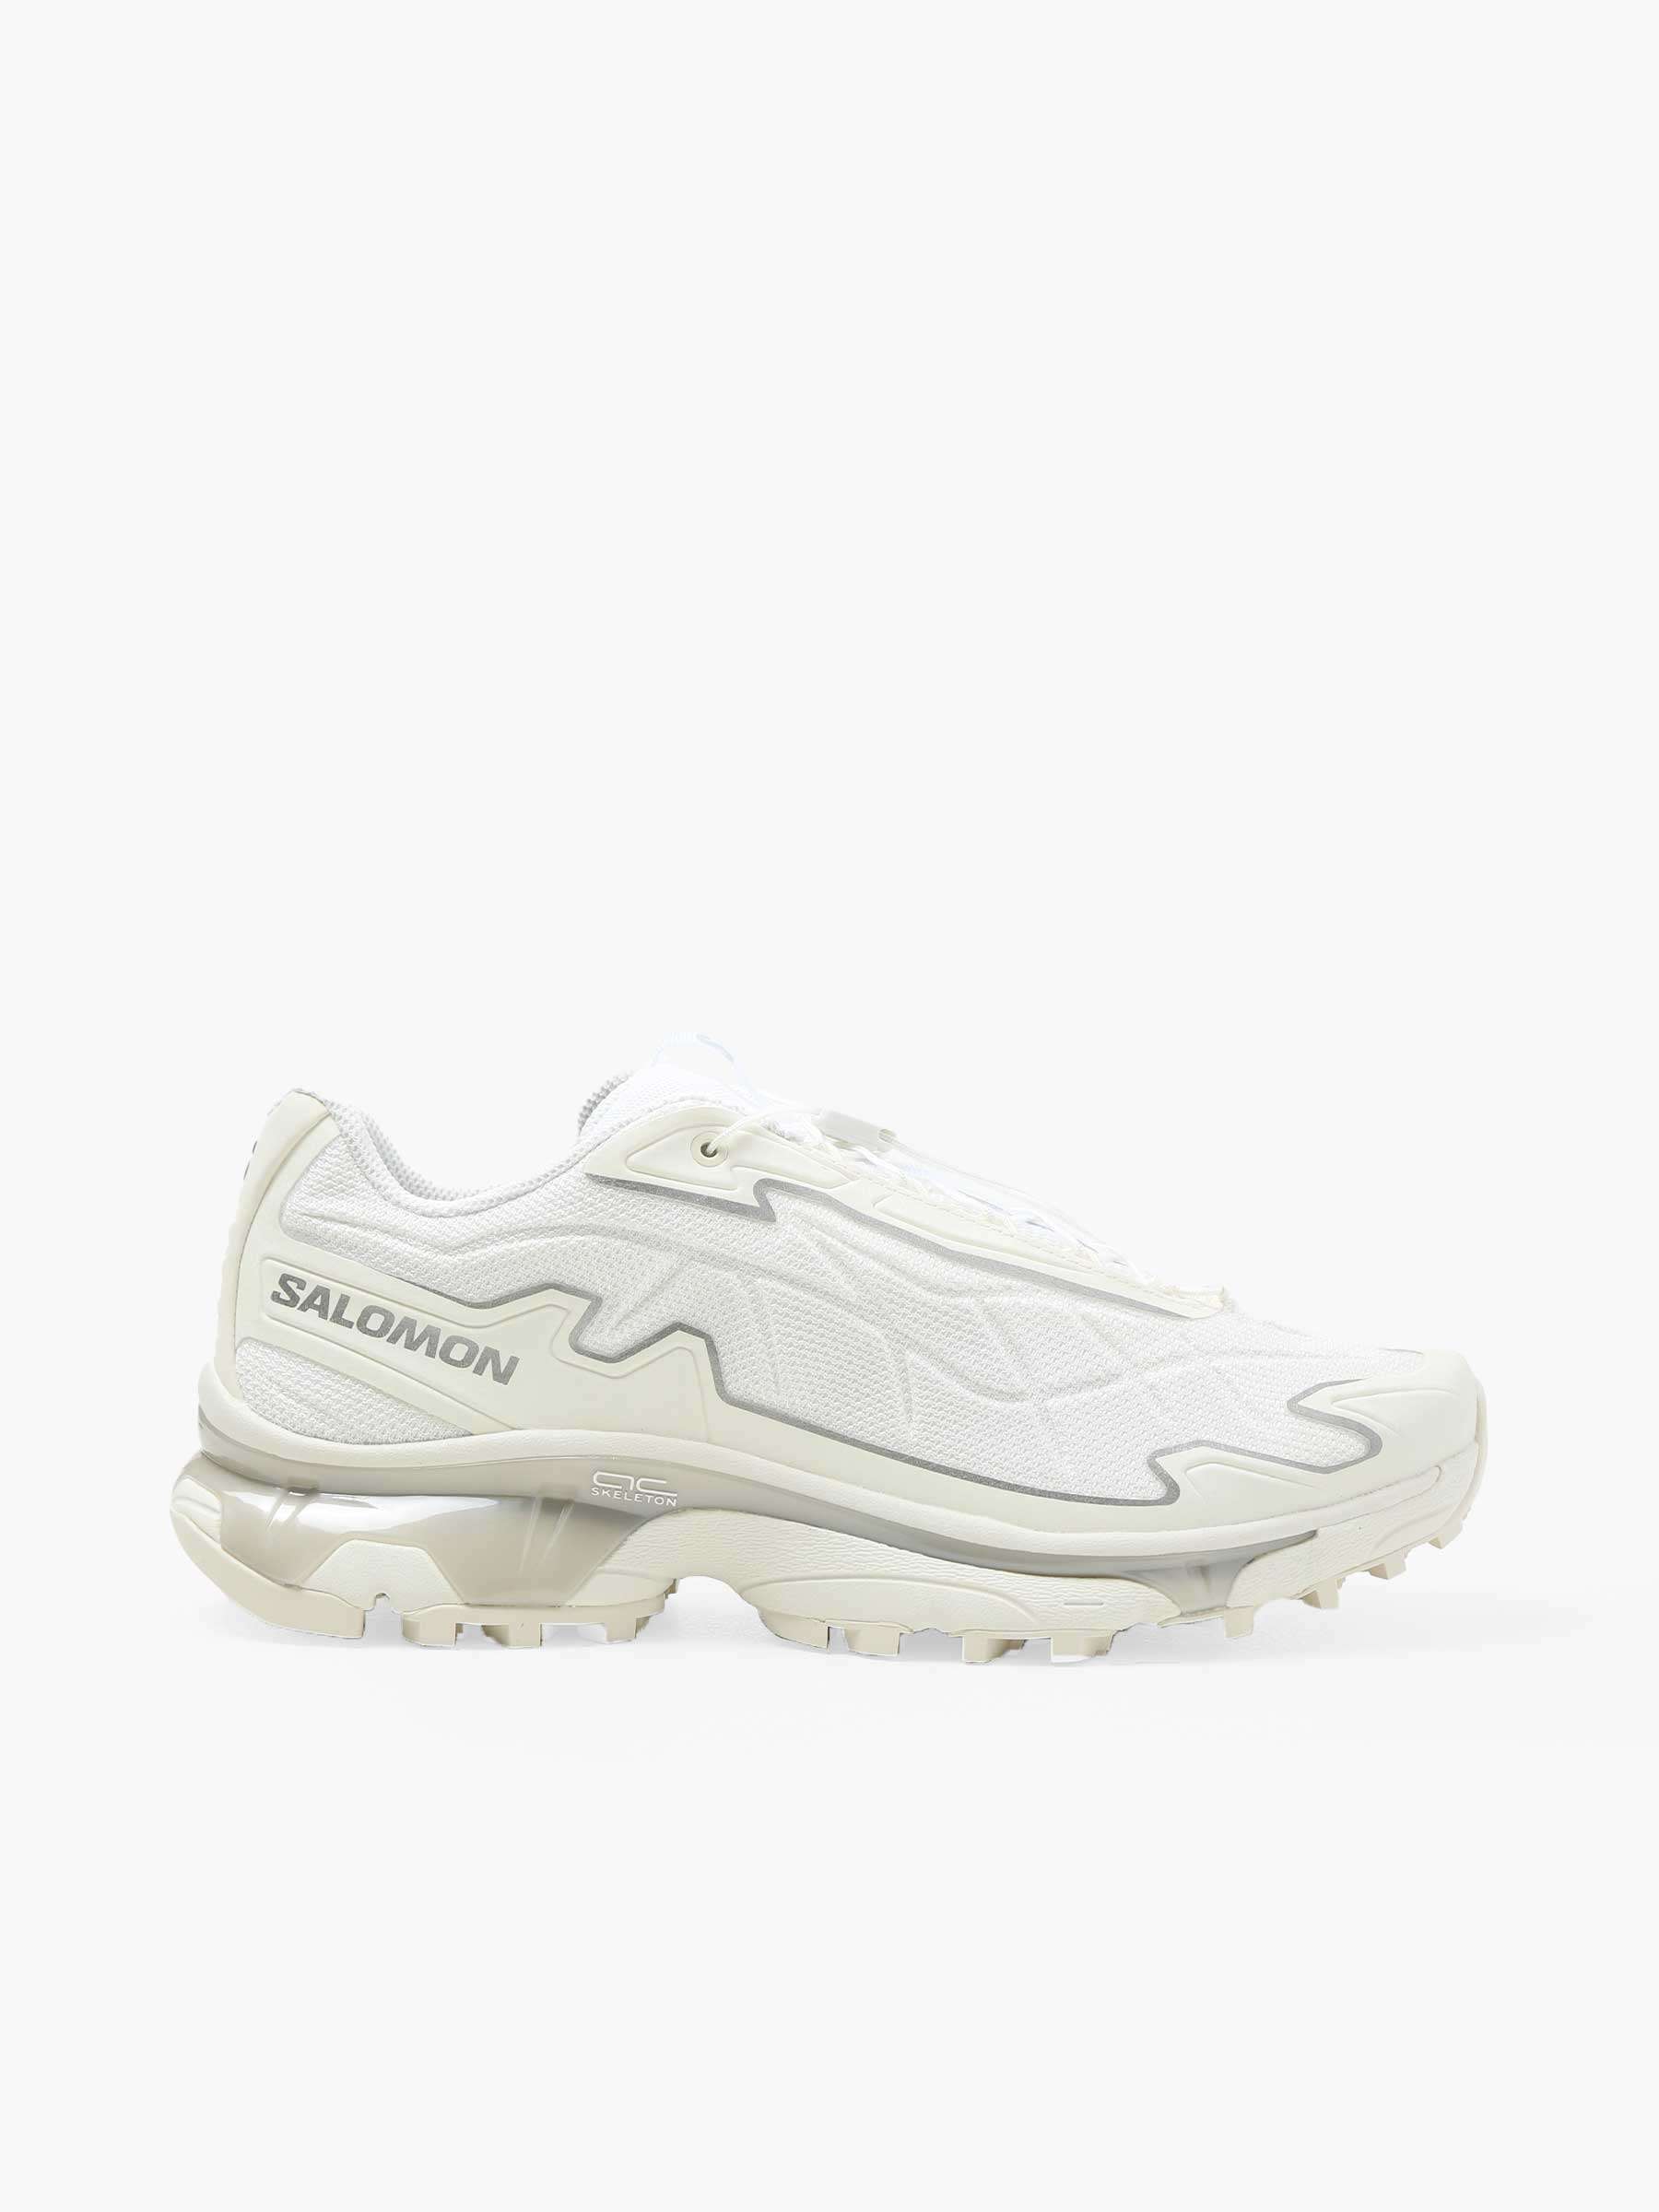 XT-Slate Vanila White Footwear Silver L47460900